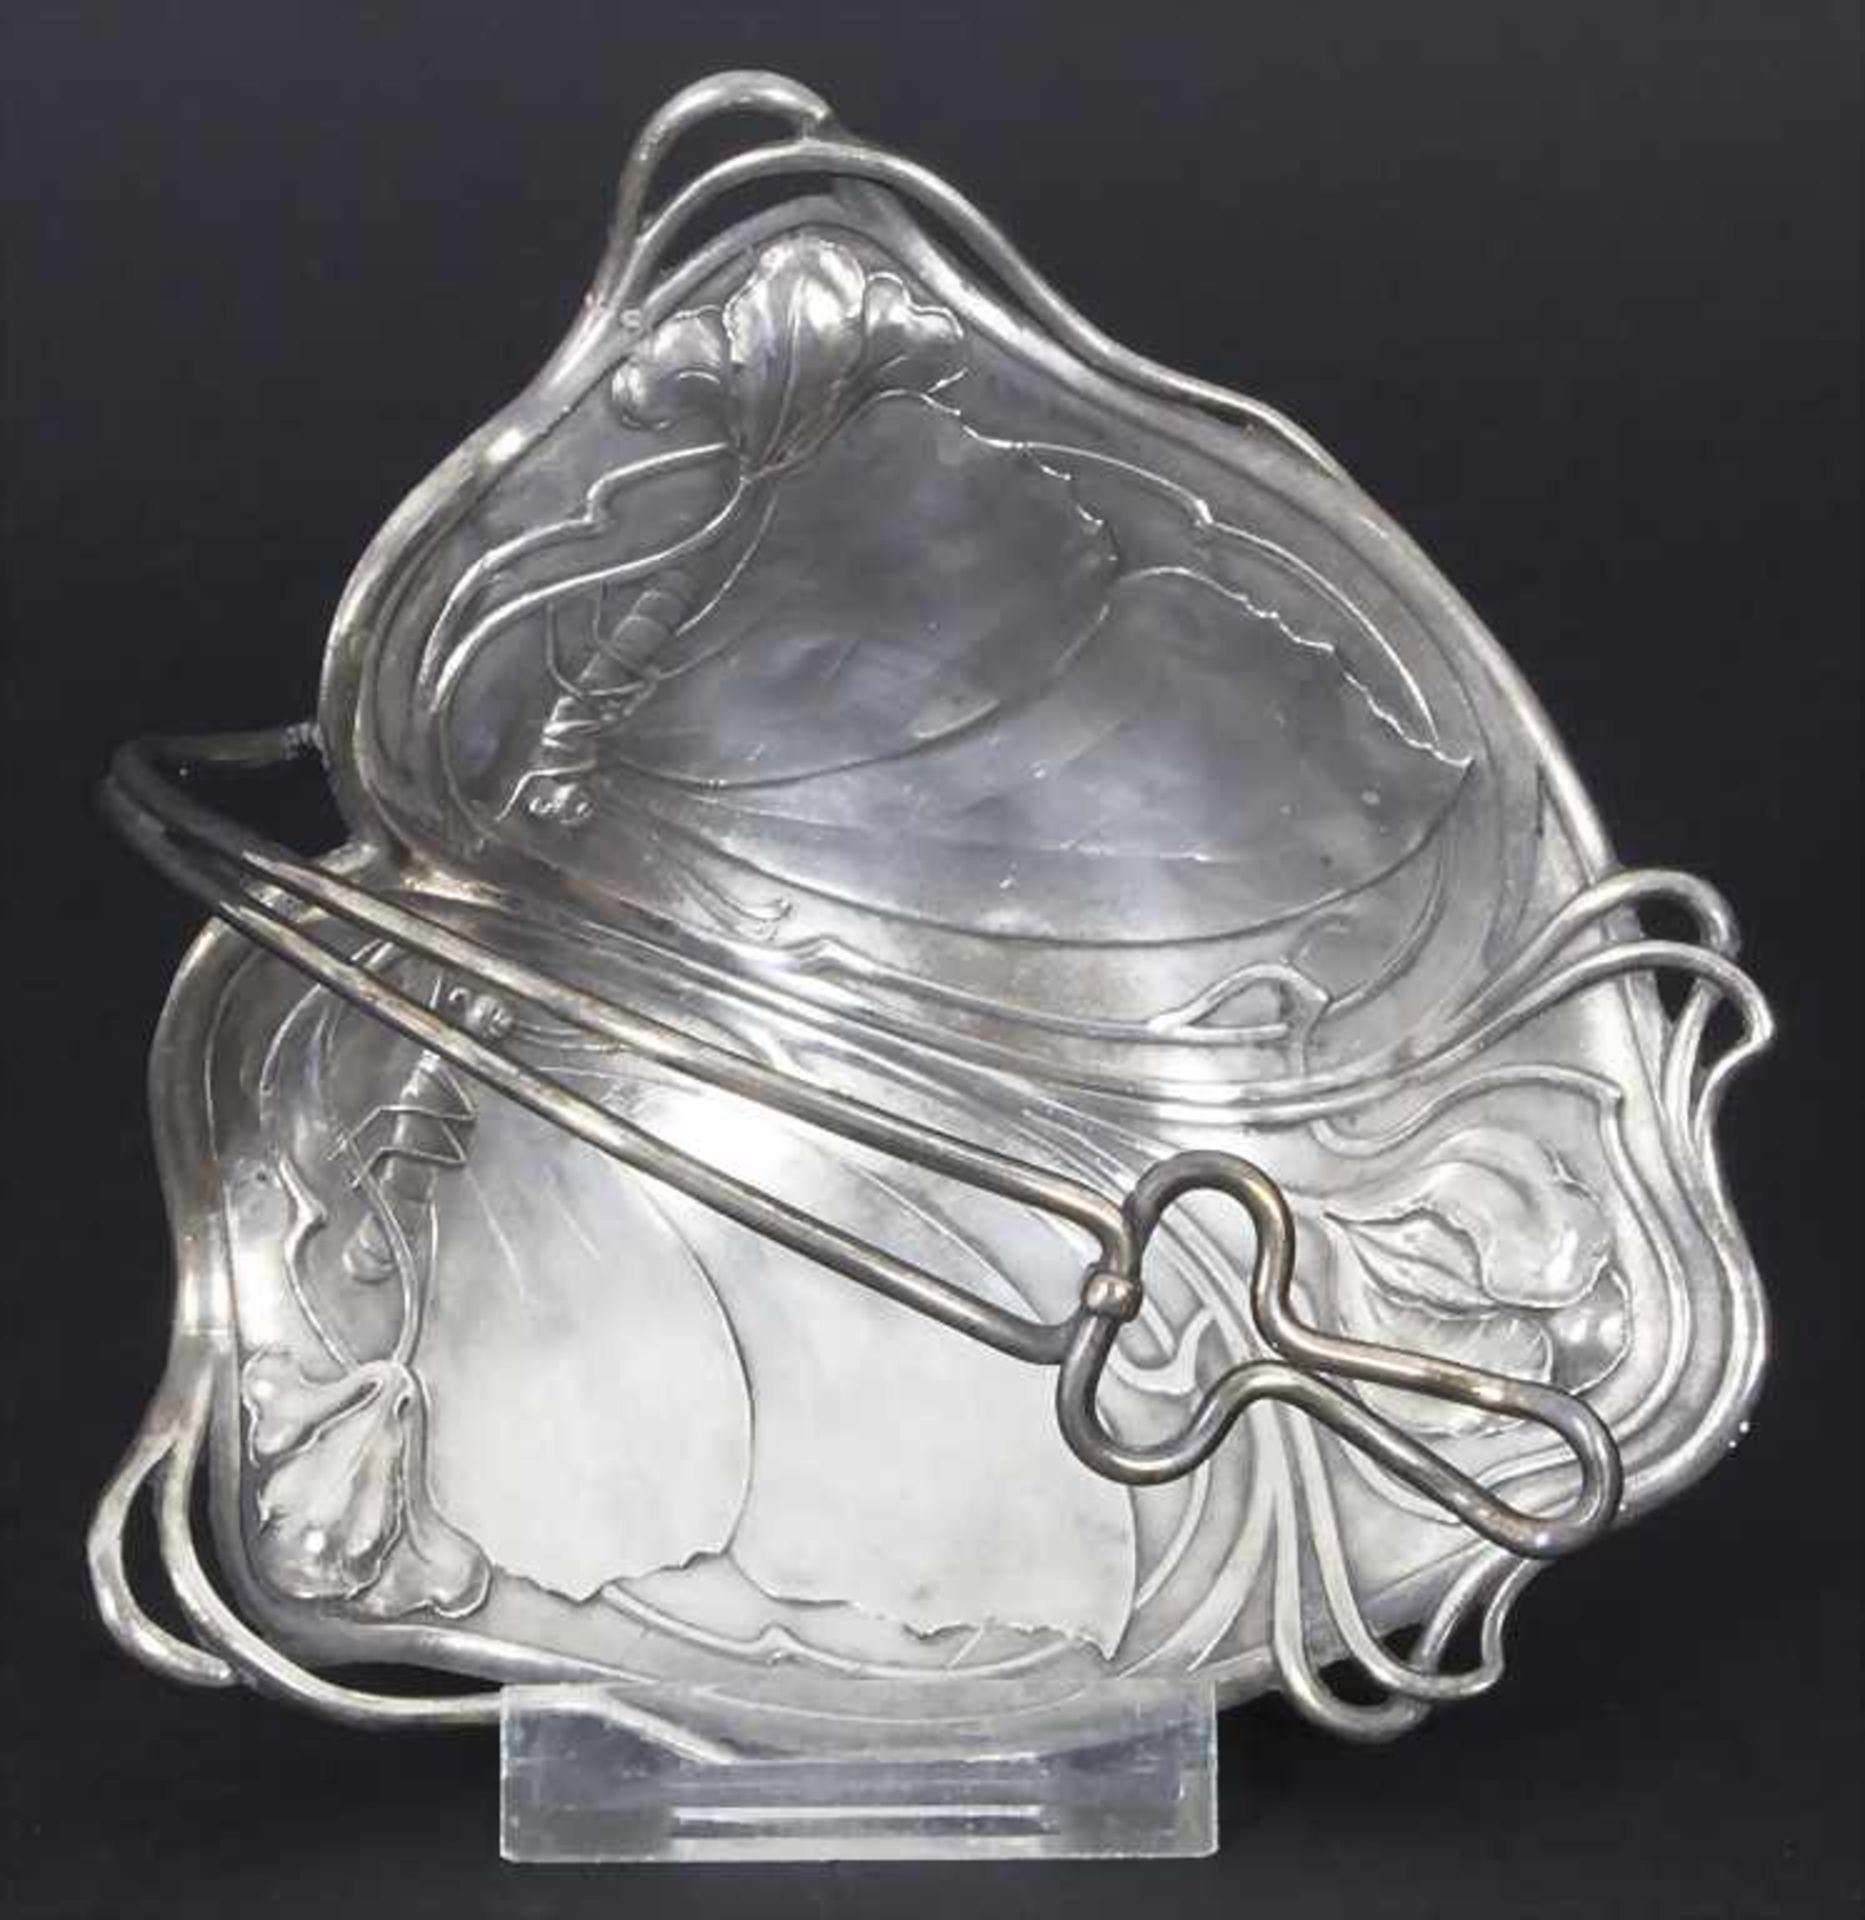 Jugendstil Zuckerschale auf vier Füßen mit Schmetterlingsdekor / An Art Nouveau sugar bowl with - Image 2 of 3